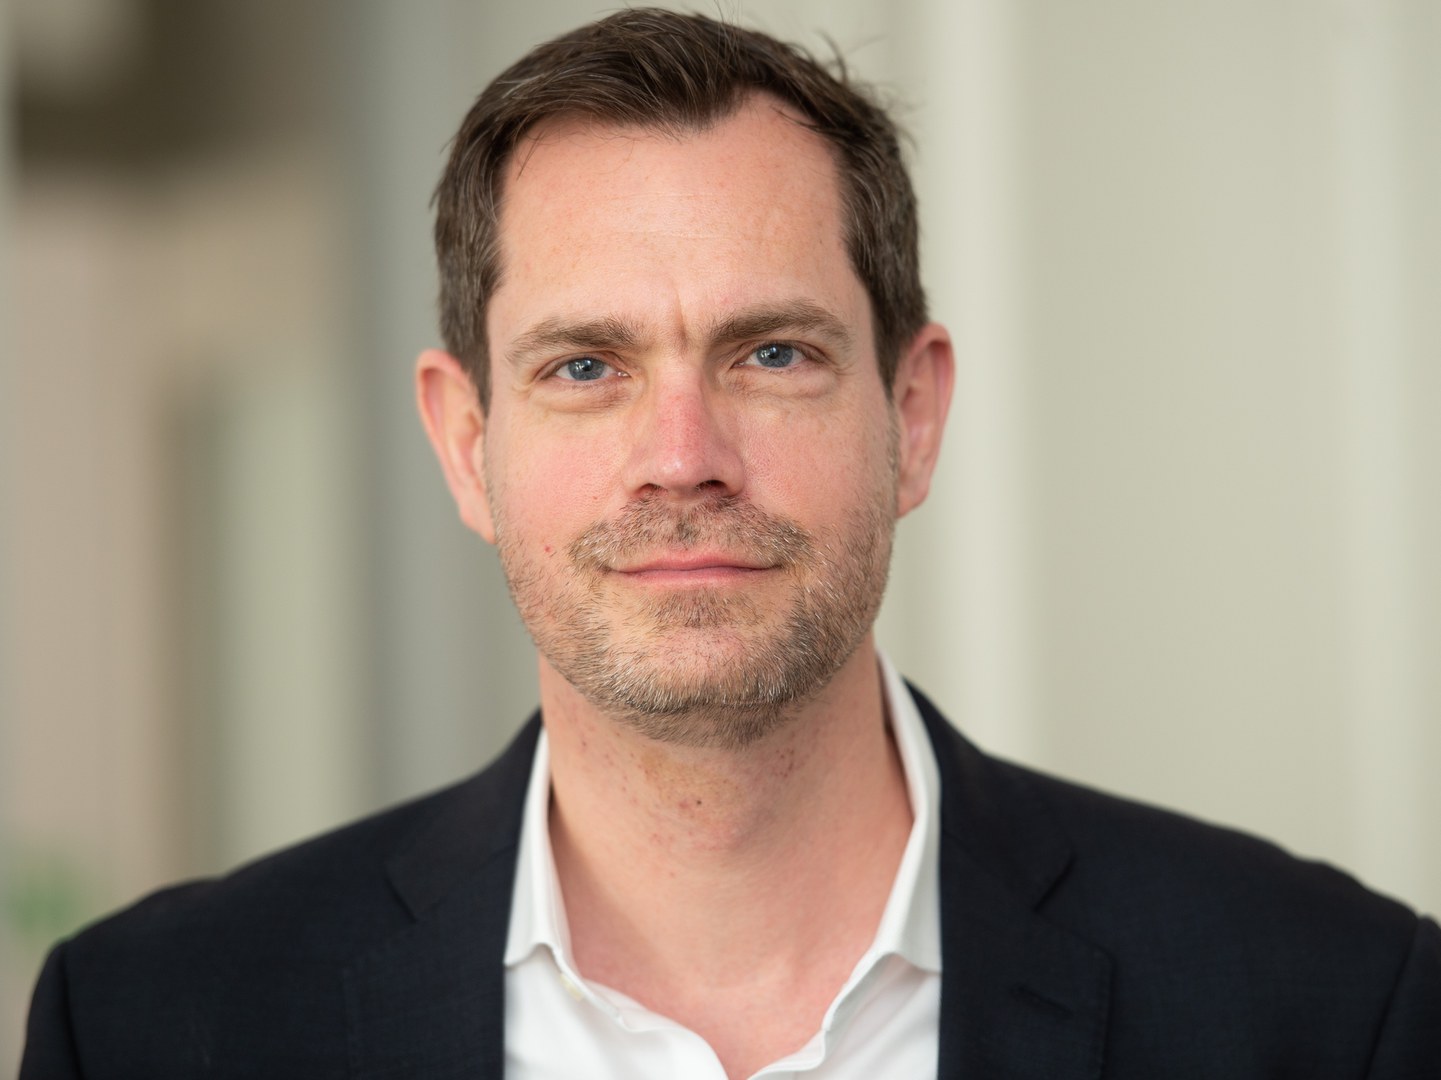 Prof. Dr. Dominik Bach ist neuer Hertz-Professor im Transdisziplinären Forschungsbereich "Leben und Gesundheit" der Universität Bonn.